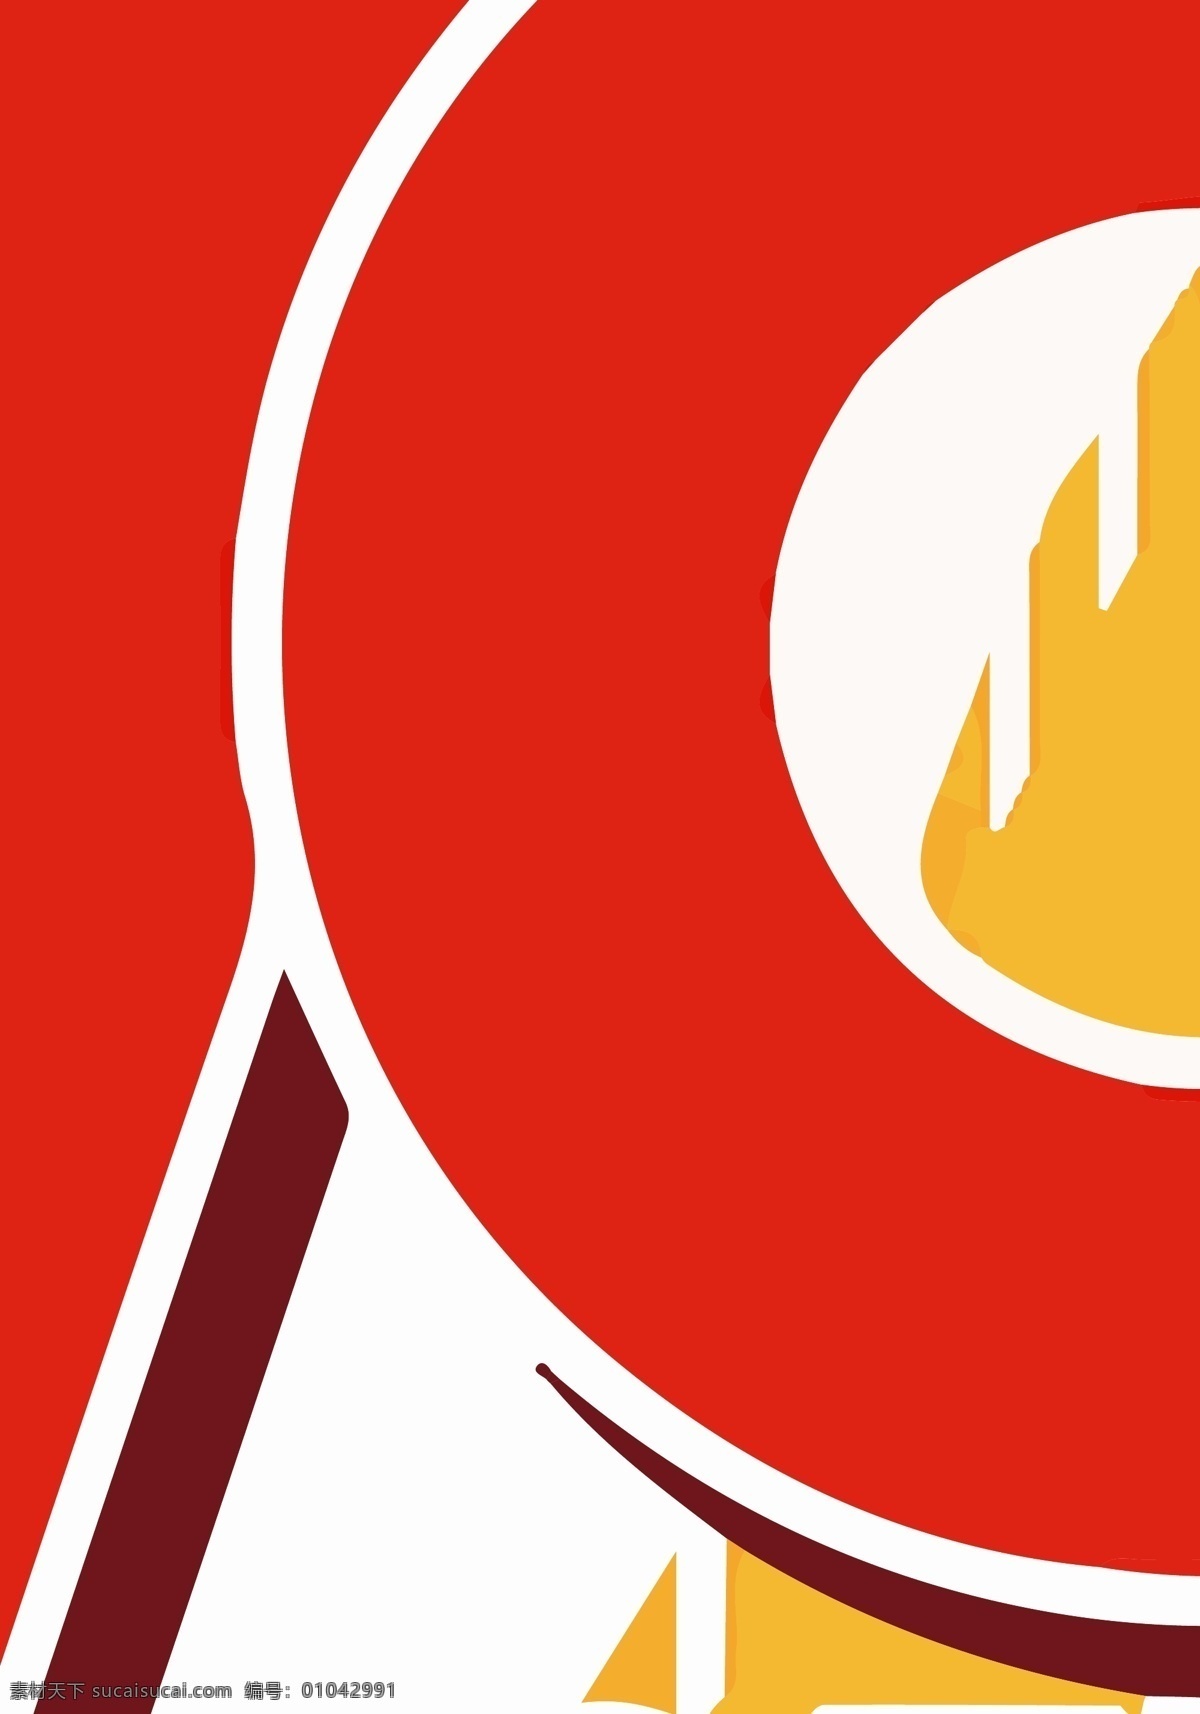 反 法西斯 周年 官方 logo 抗战 70周年 和平鸽 长城 五星 logo设计